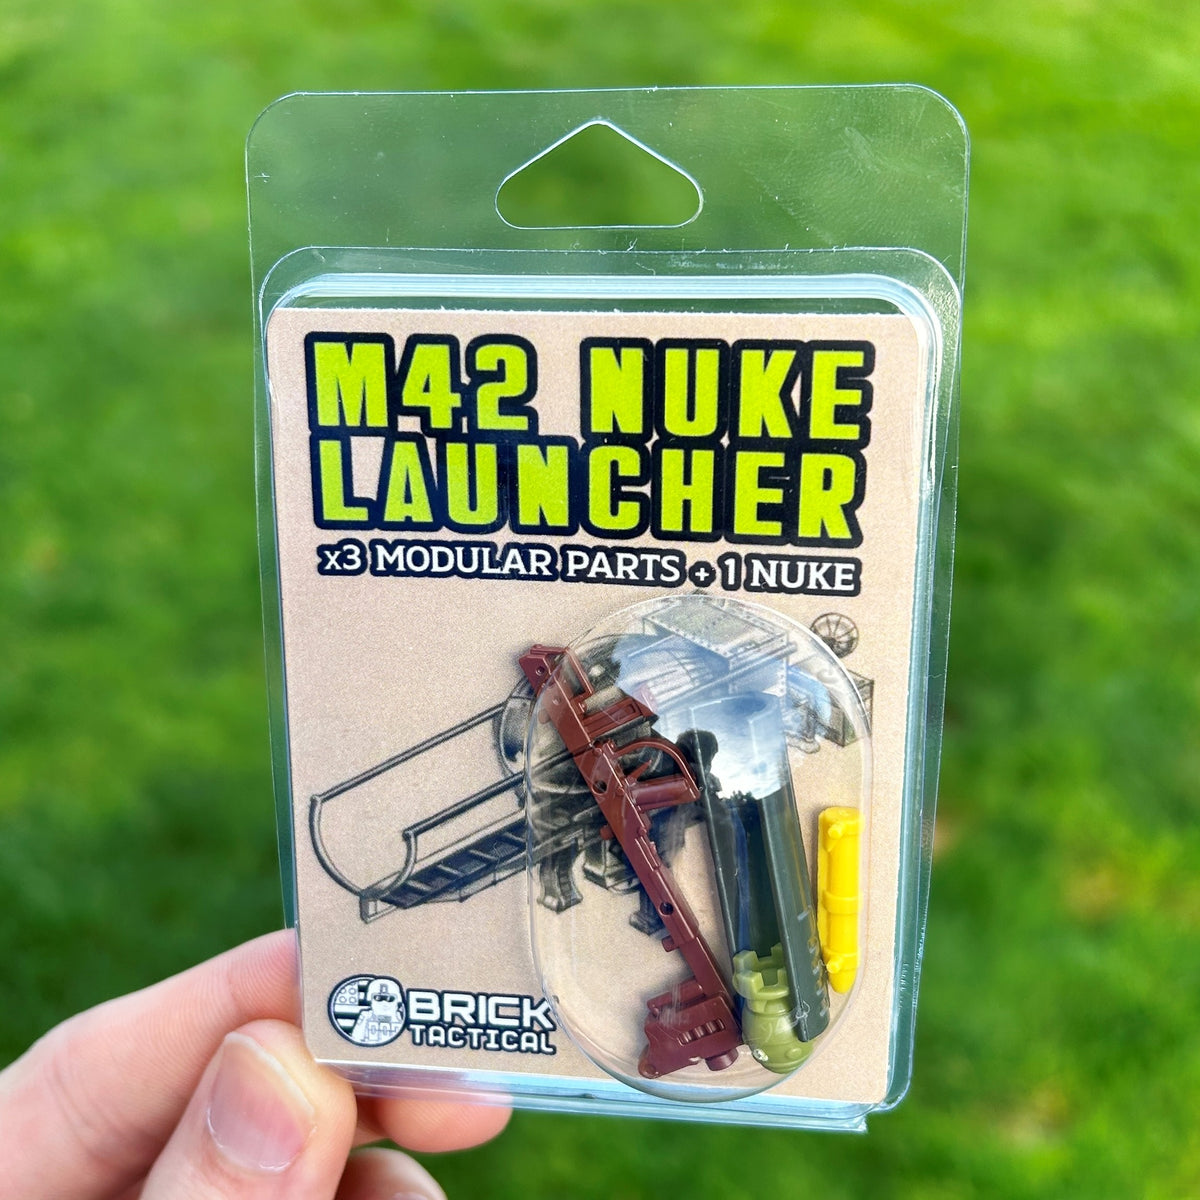 M42 Nuke Launcher – BrickTactical